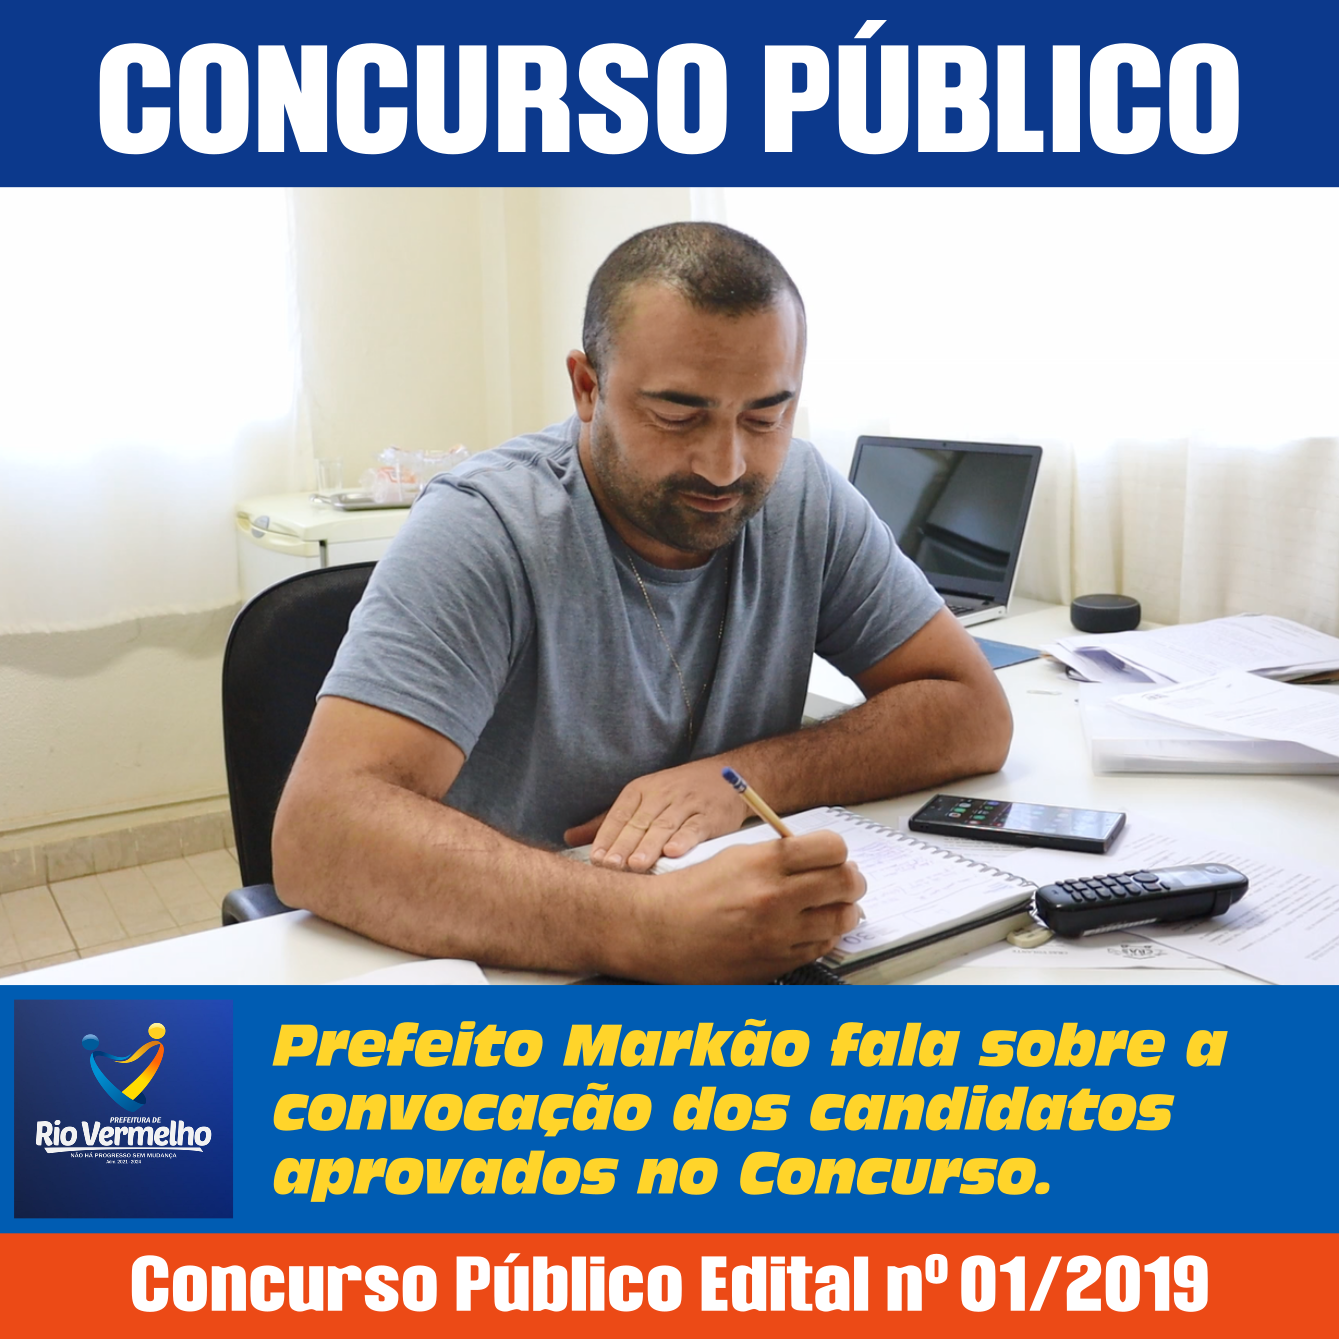 Você está visualizando atualmente CONCURSO PÚBLICO: Prefeito Markão fala sobre a convocação dos candidatos aprovados